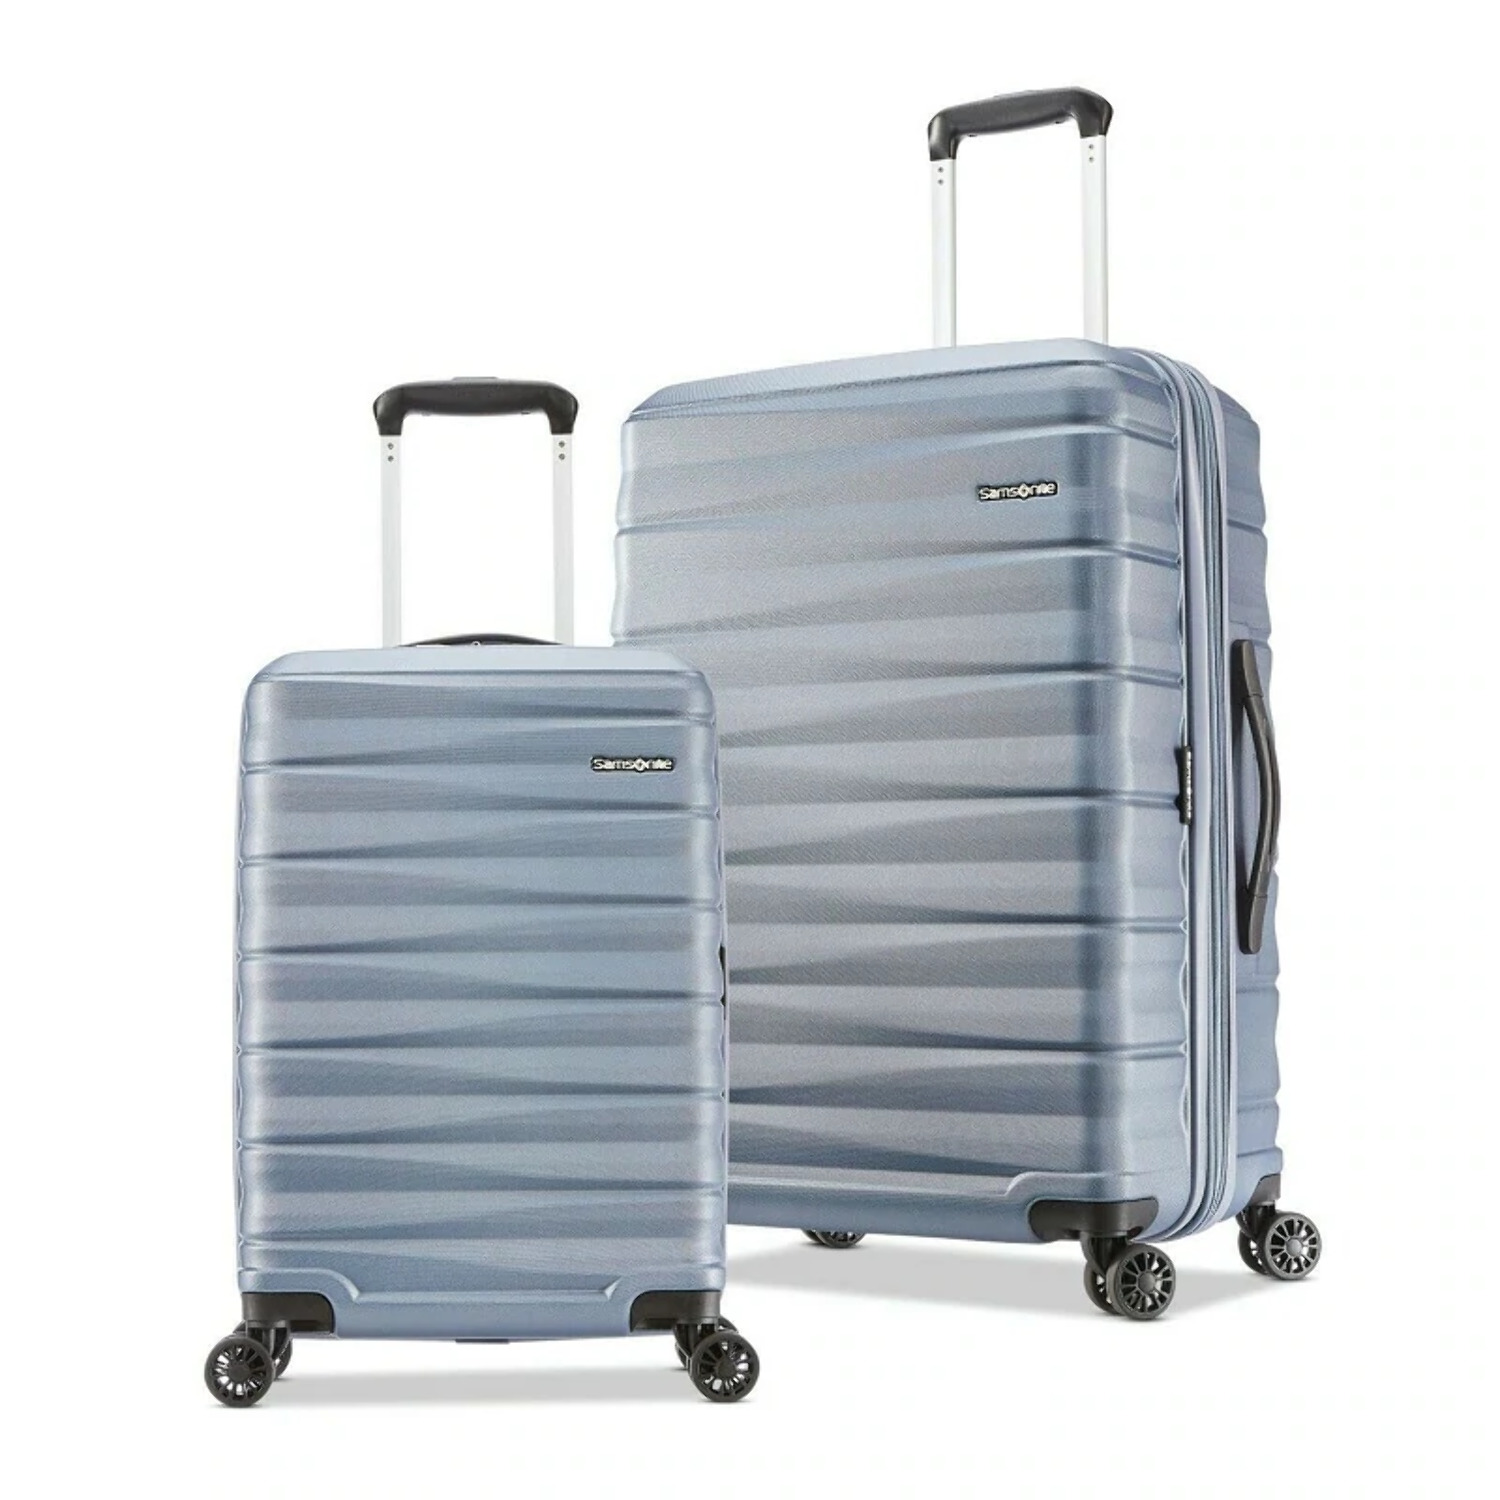 Samsonite Kingsbury Hardside Suitcase 2-Piece Luggage Set - Slate Blue - New - image 1 of 11